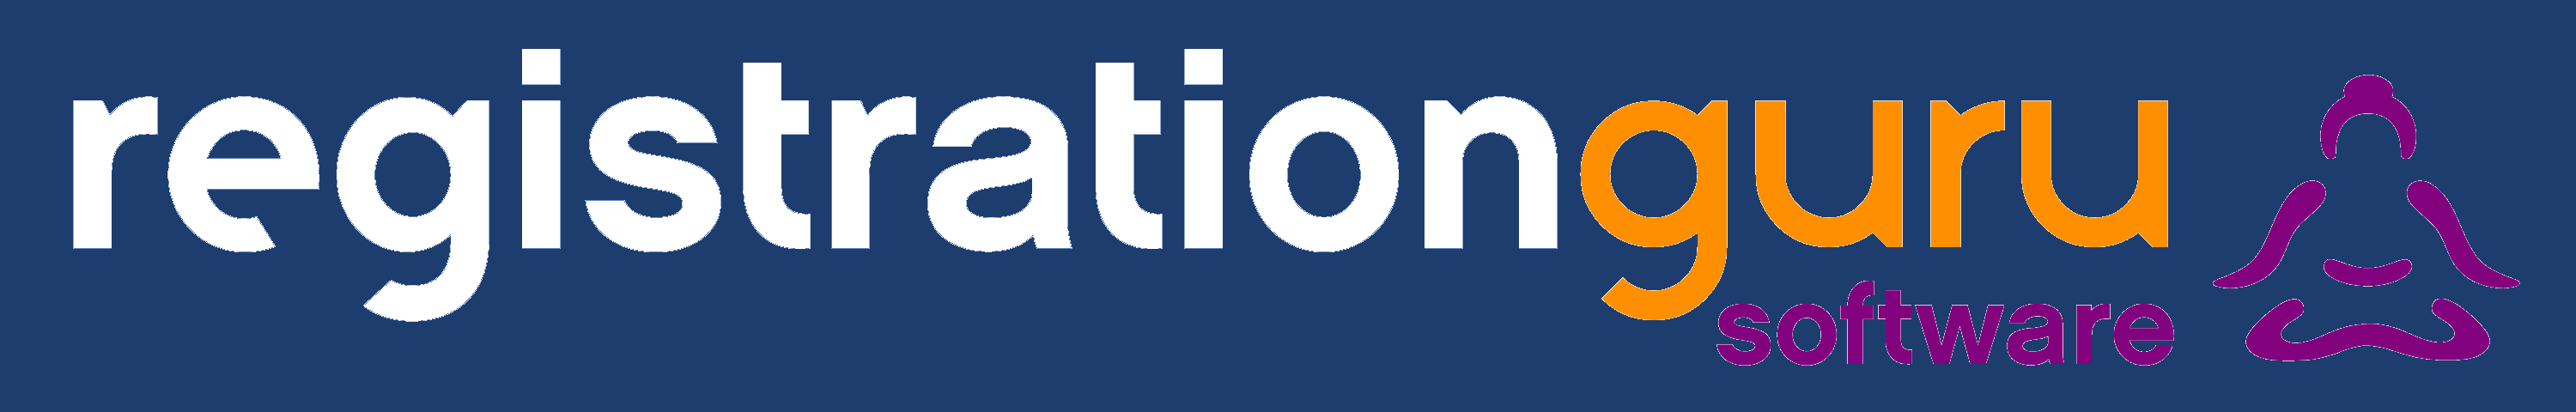 RegistrationGuru Logo